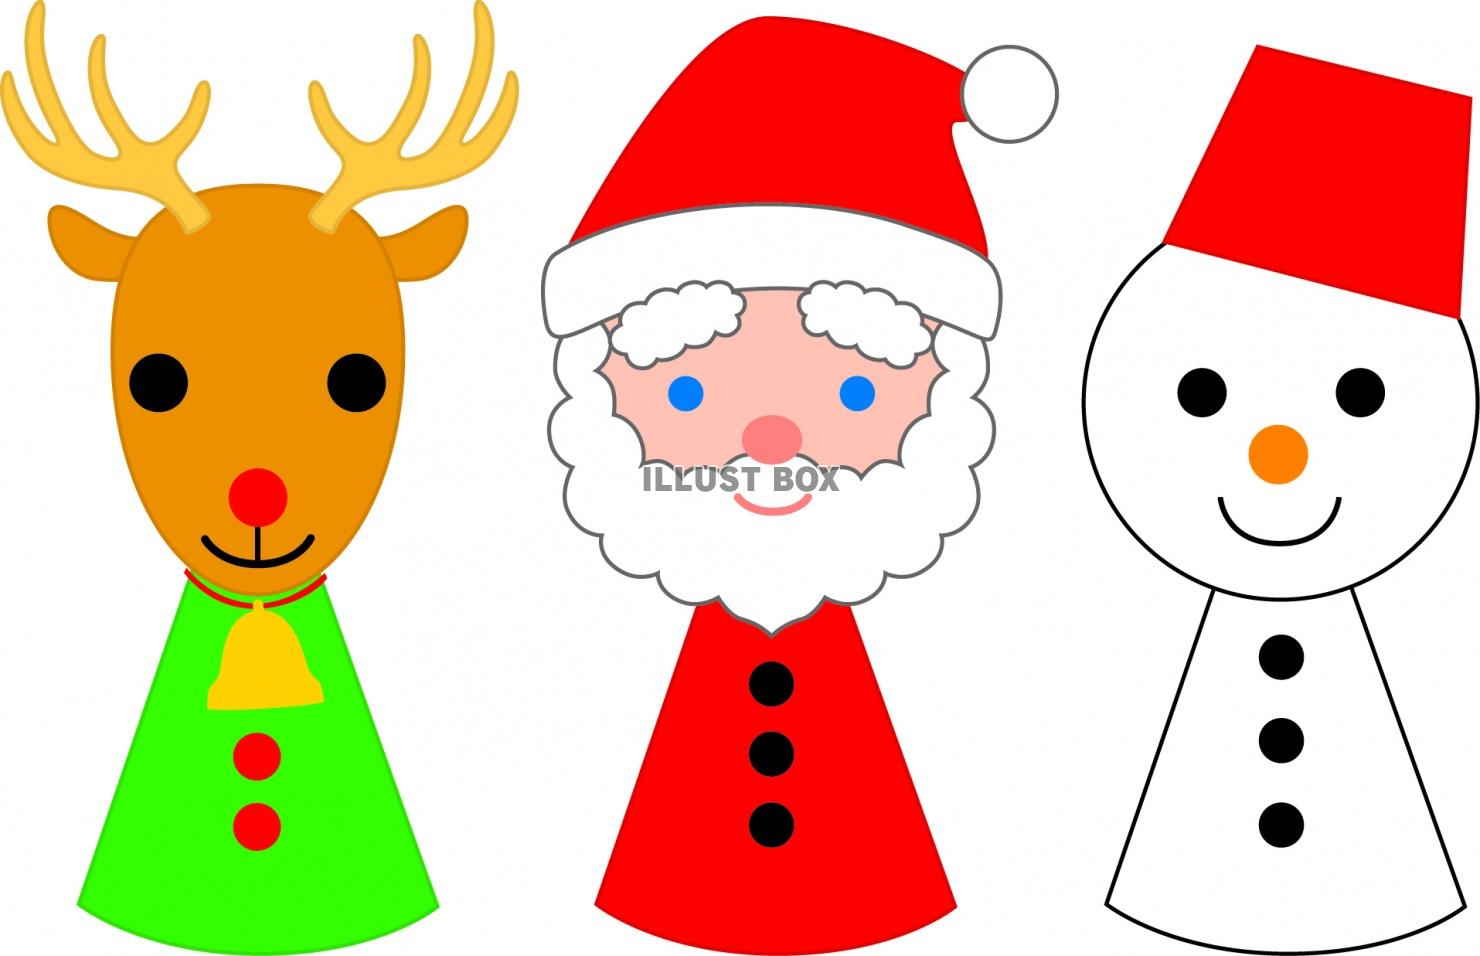 フリー素材 サンタクロースと トナカイ 雪だるま トナカイを描いたかわいいイラスト 3pcsクリスマスストッキングサンタ 雪だるま トナカイクリスマスキャラクター Ciudaddelmaizslp Gob Mx